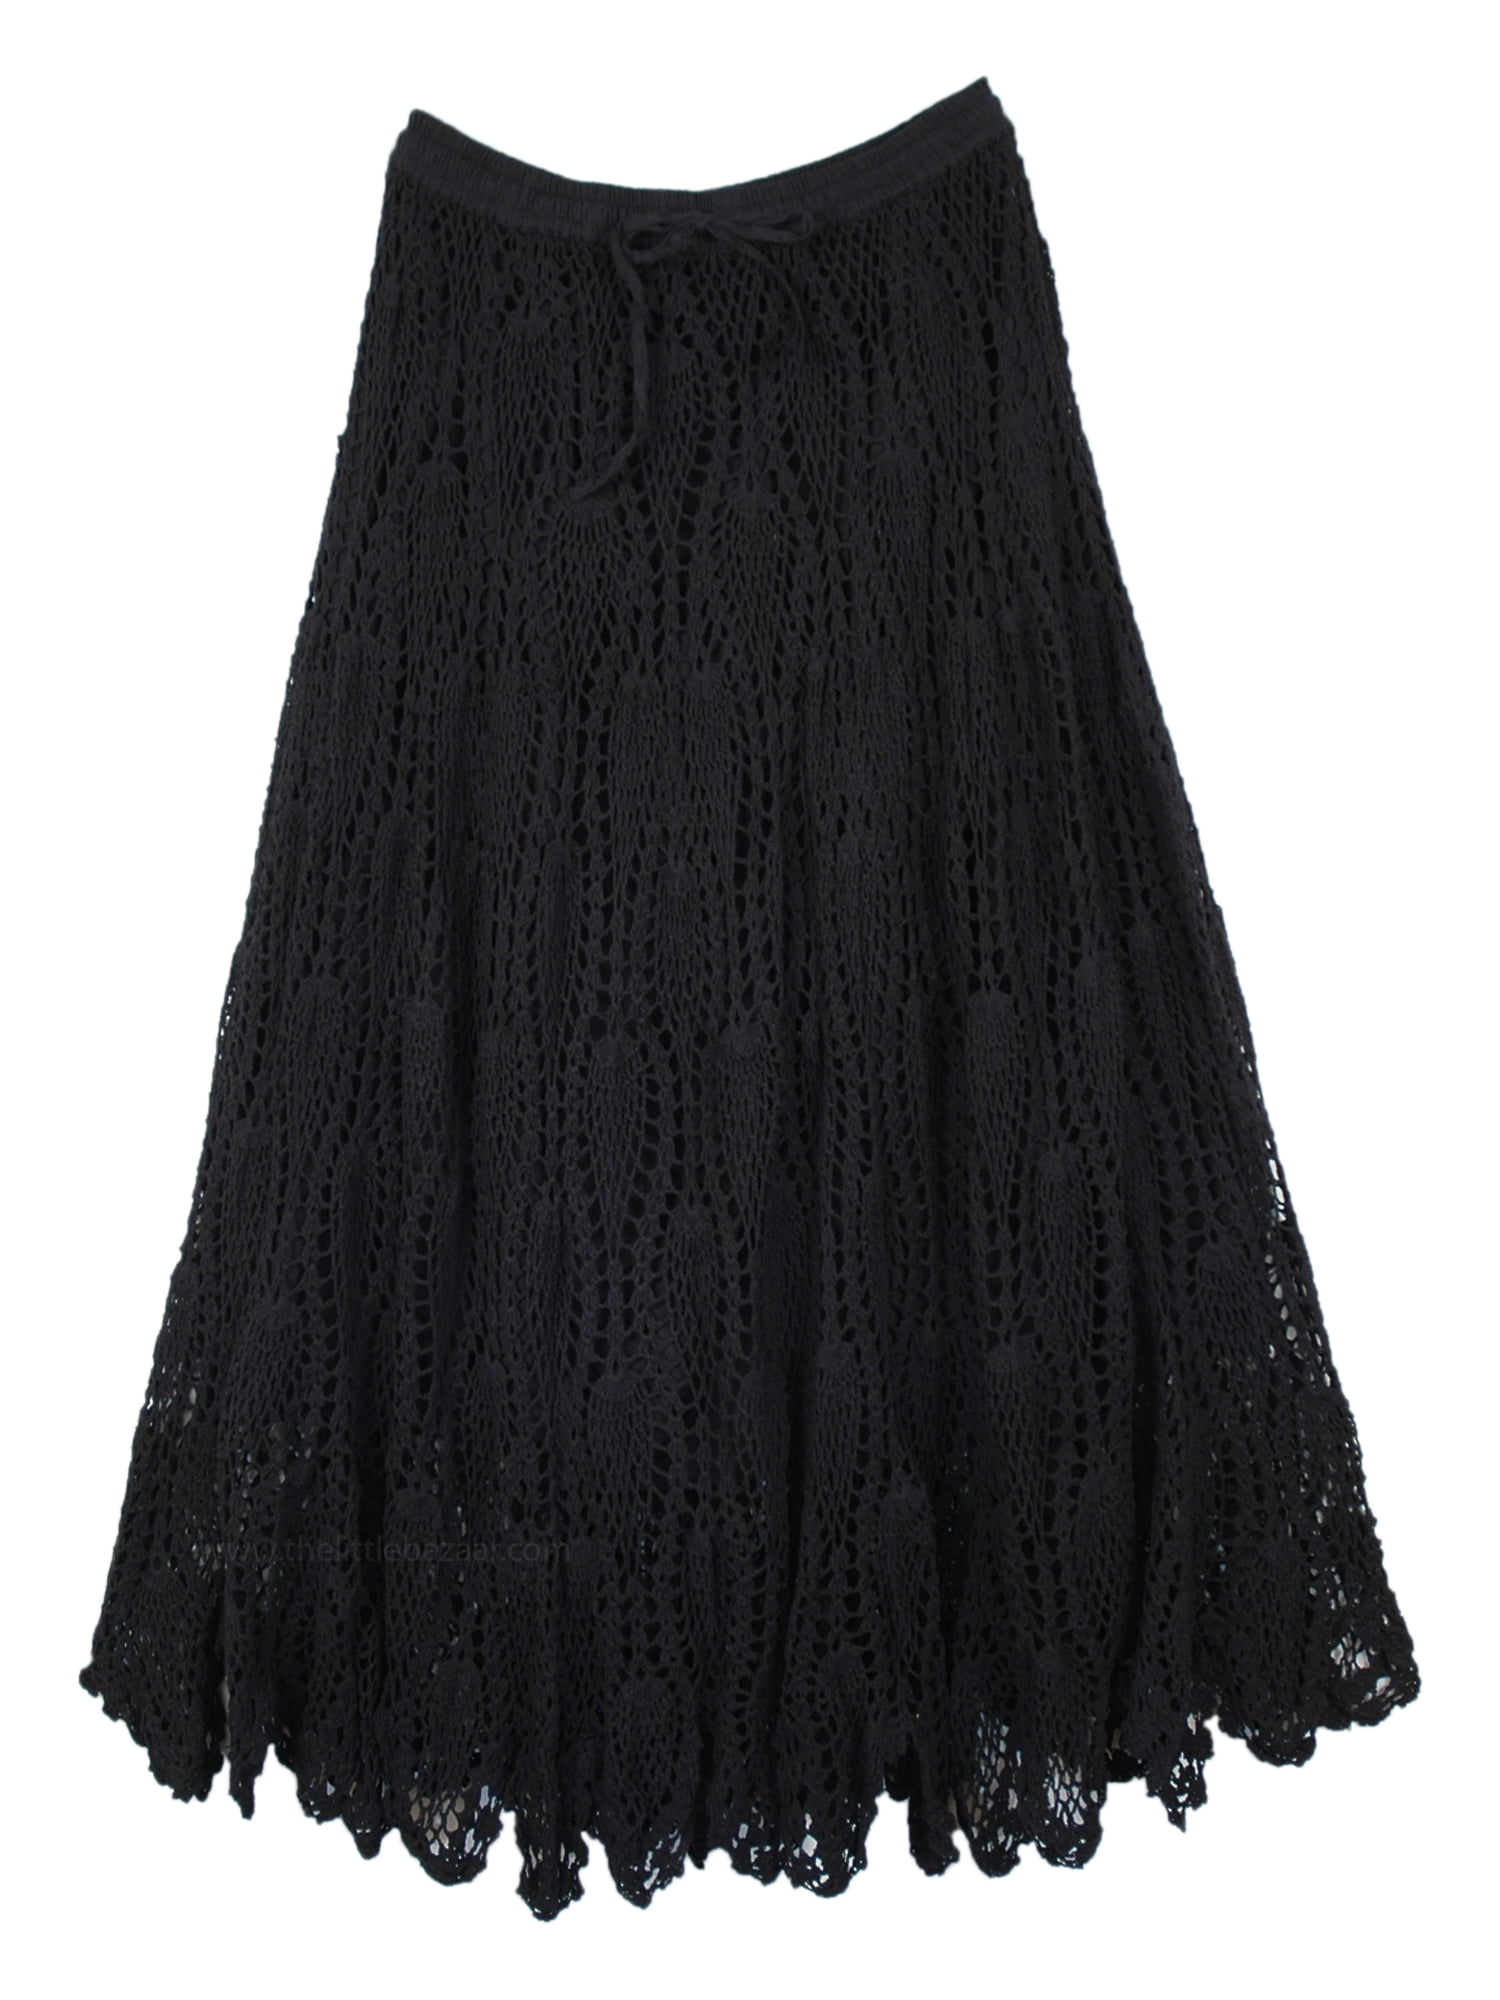 Knit-Crochet Skirt Crochet Pattern Long Cotton Skirt Viking Black ...